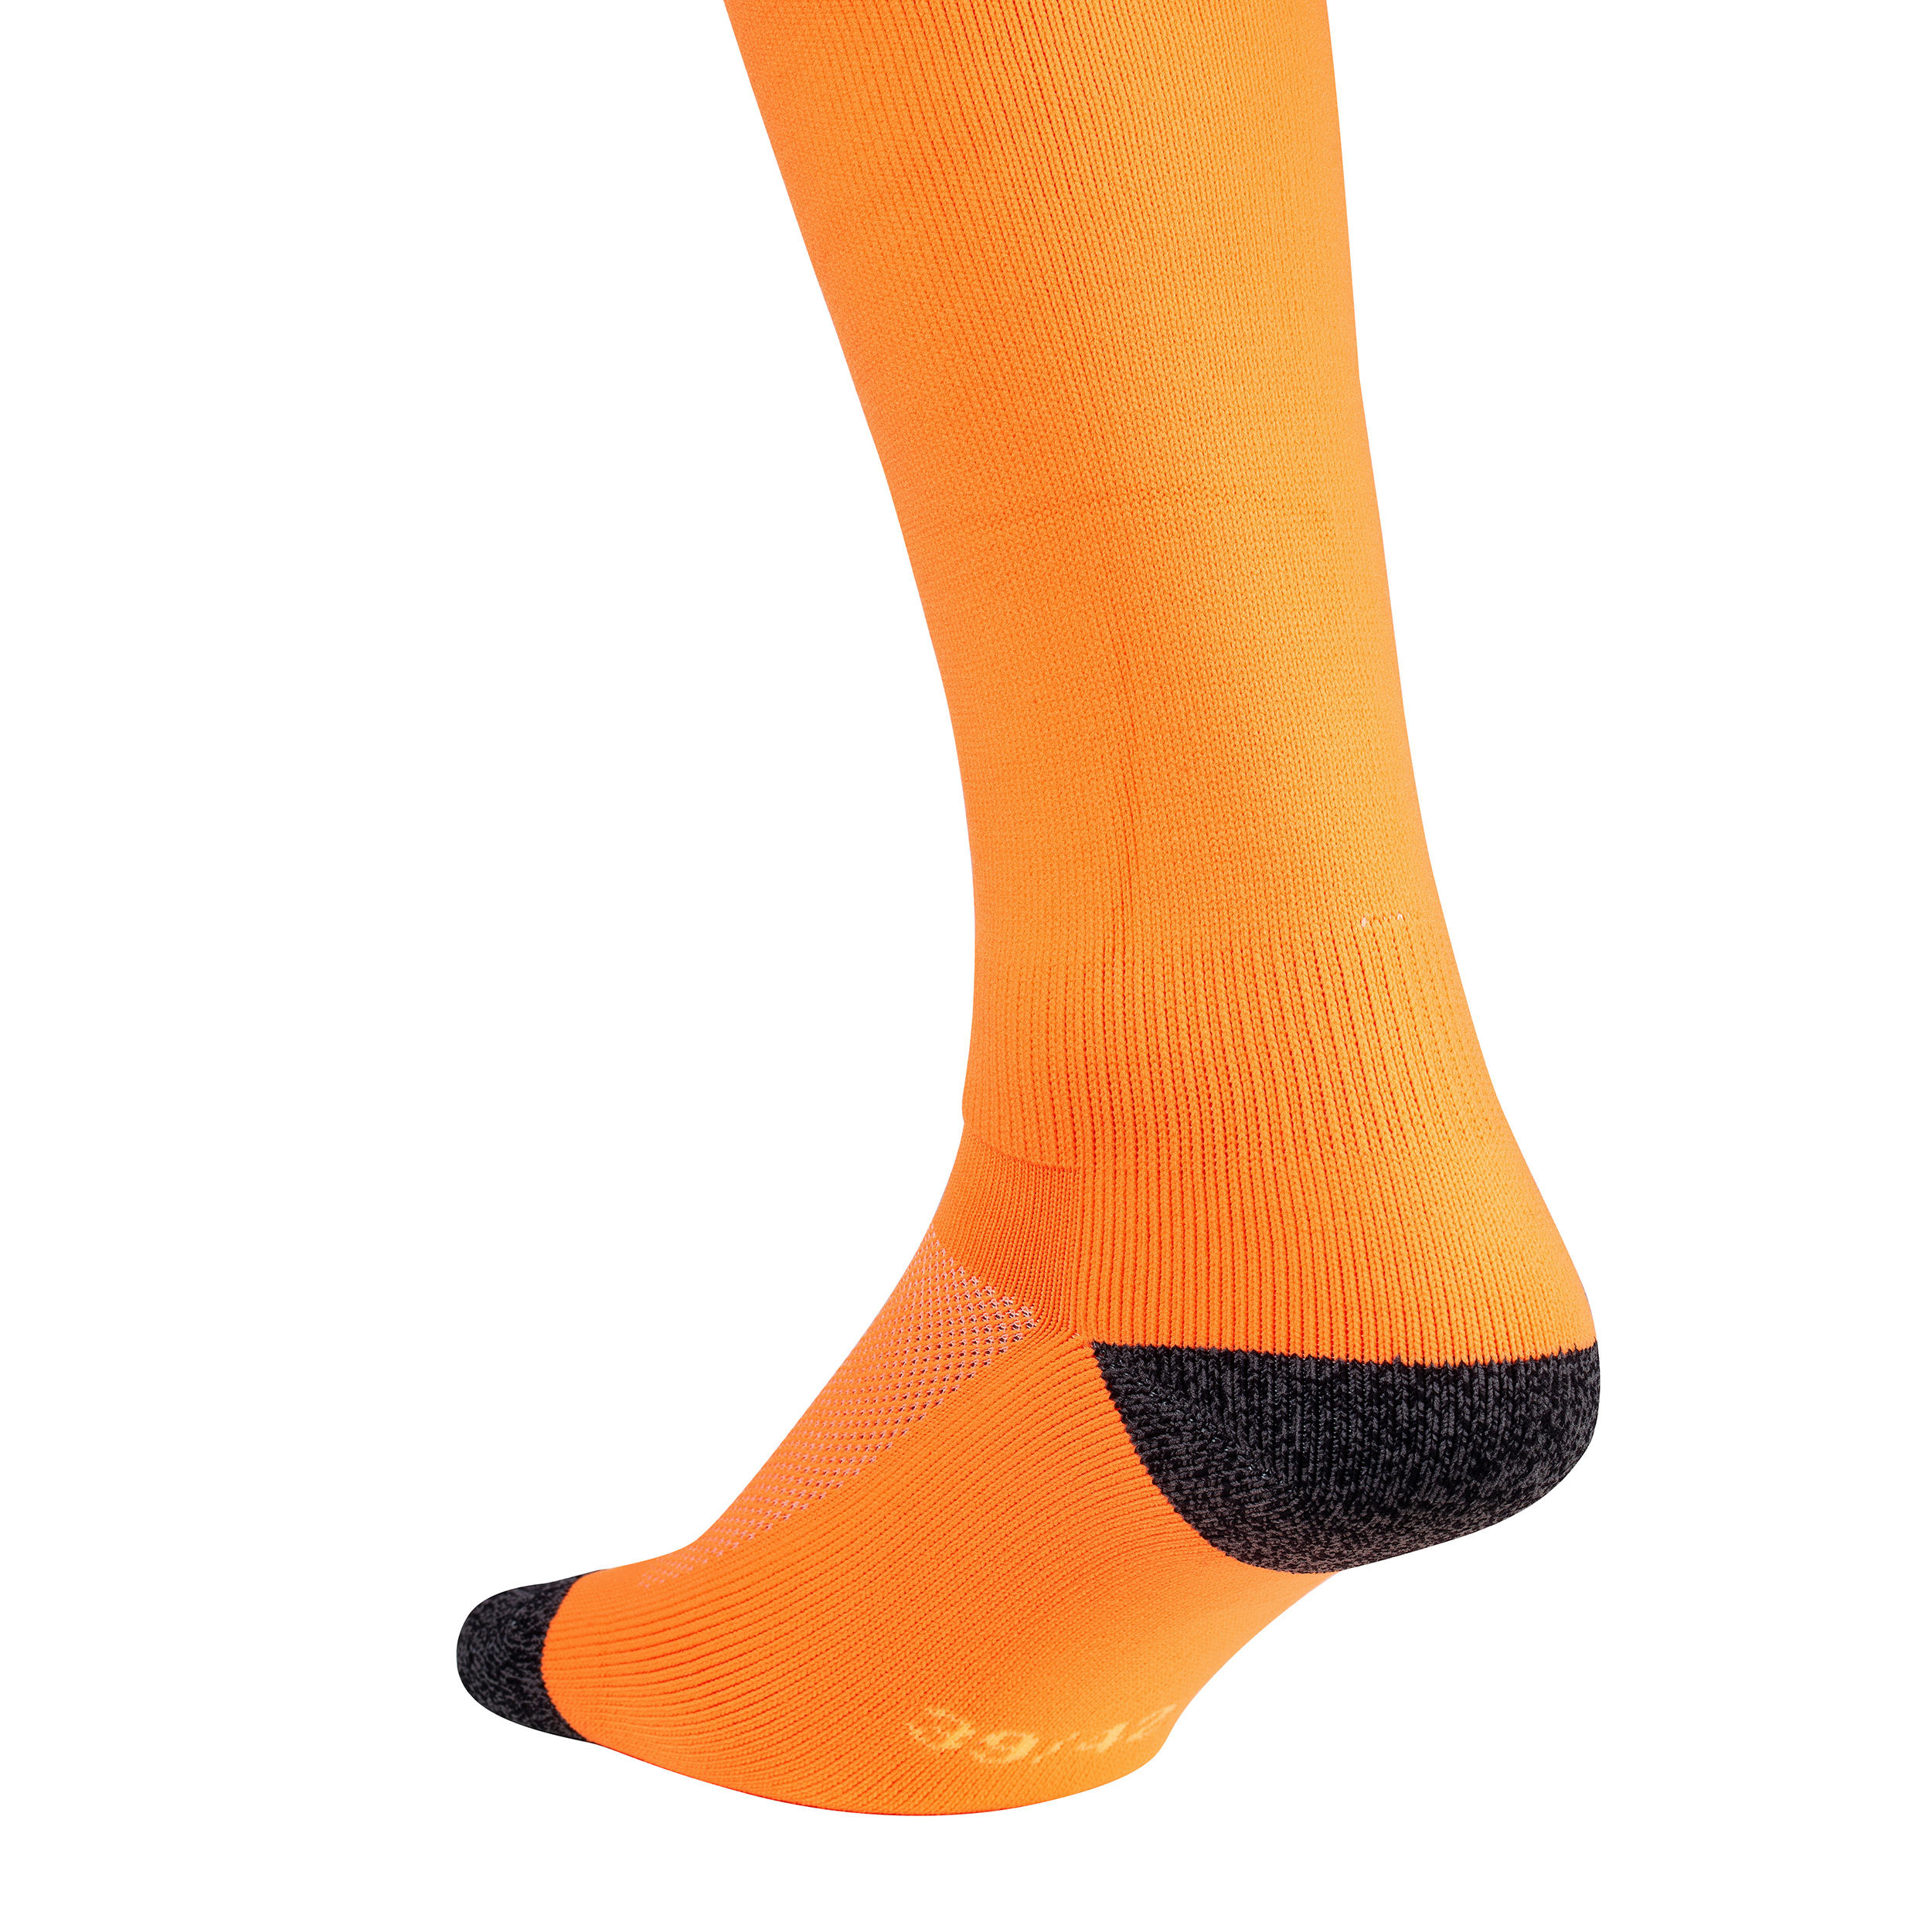 Kids' Field Hockey Socks FH500 - Neon Orange 2/4